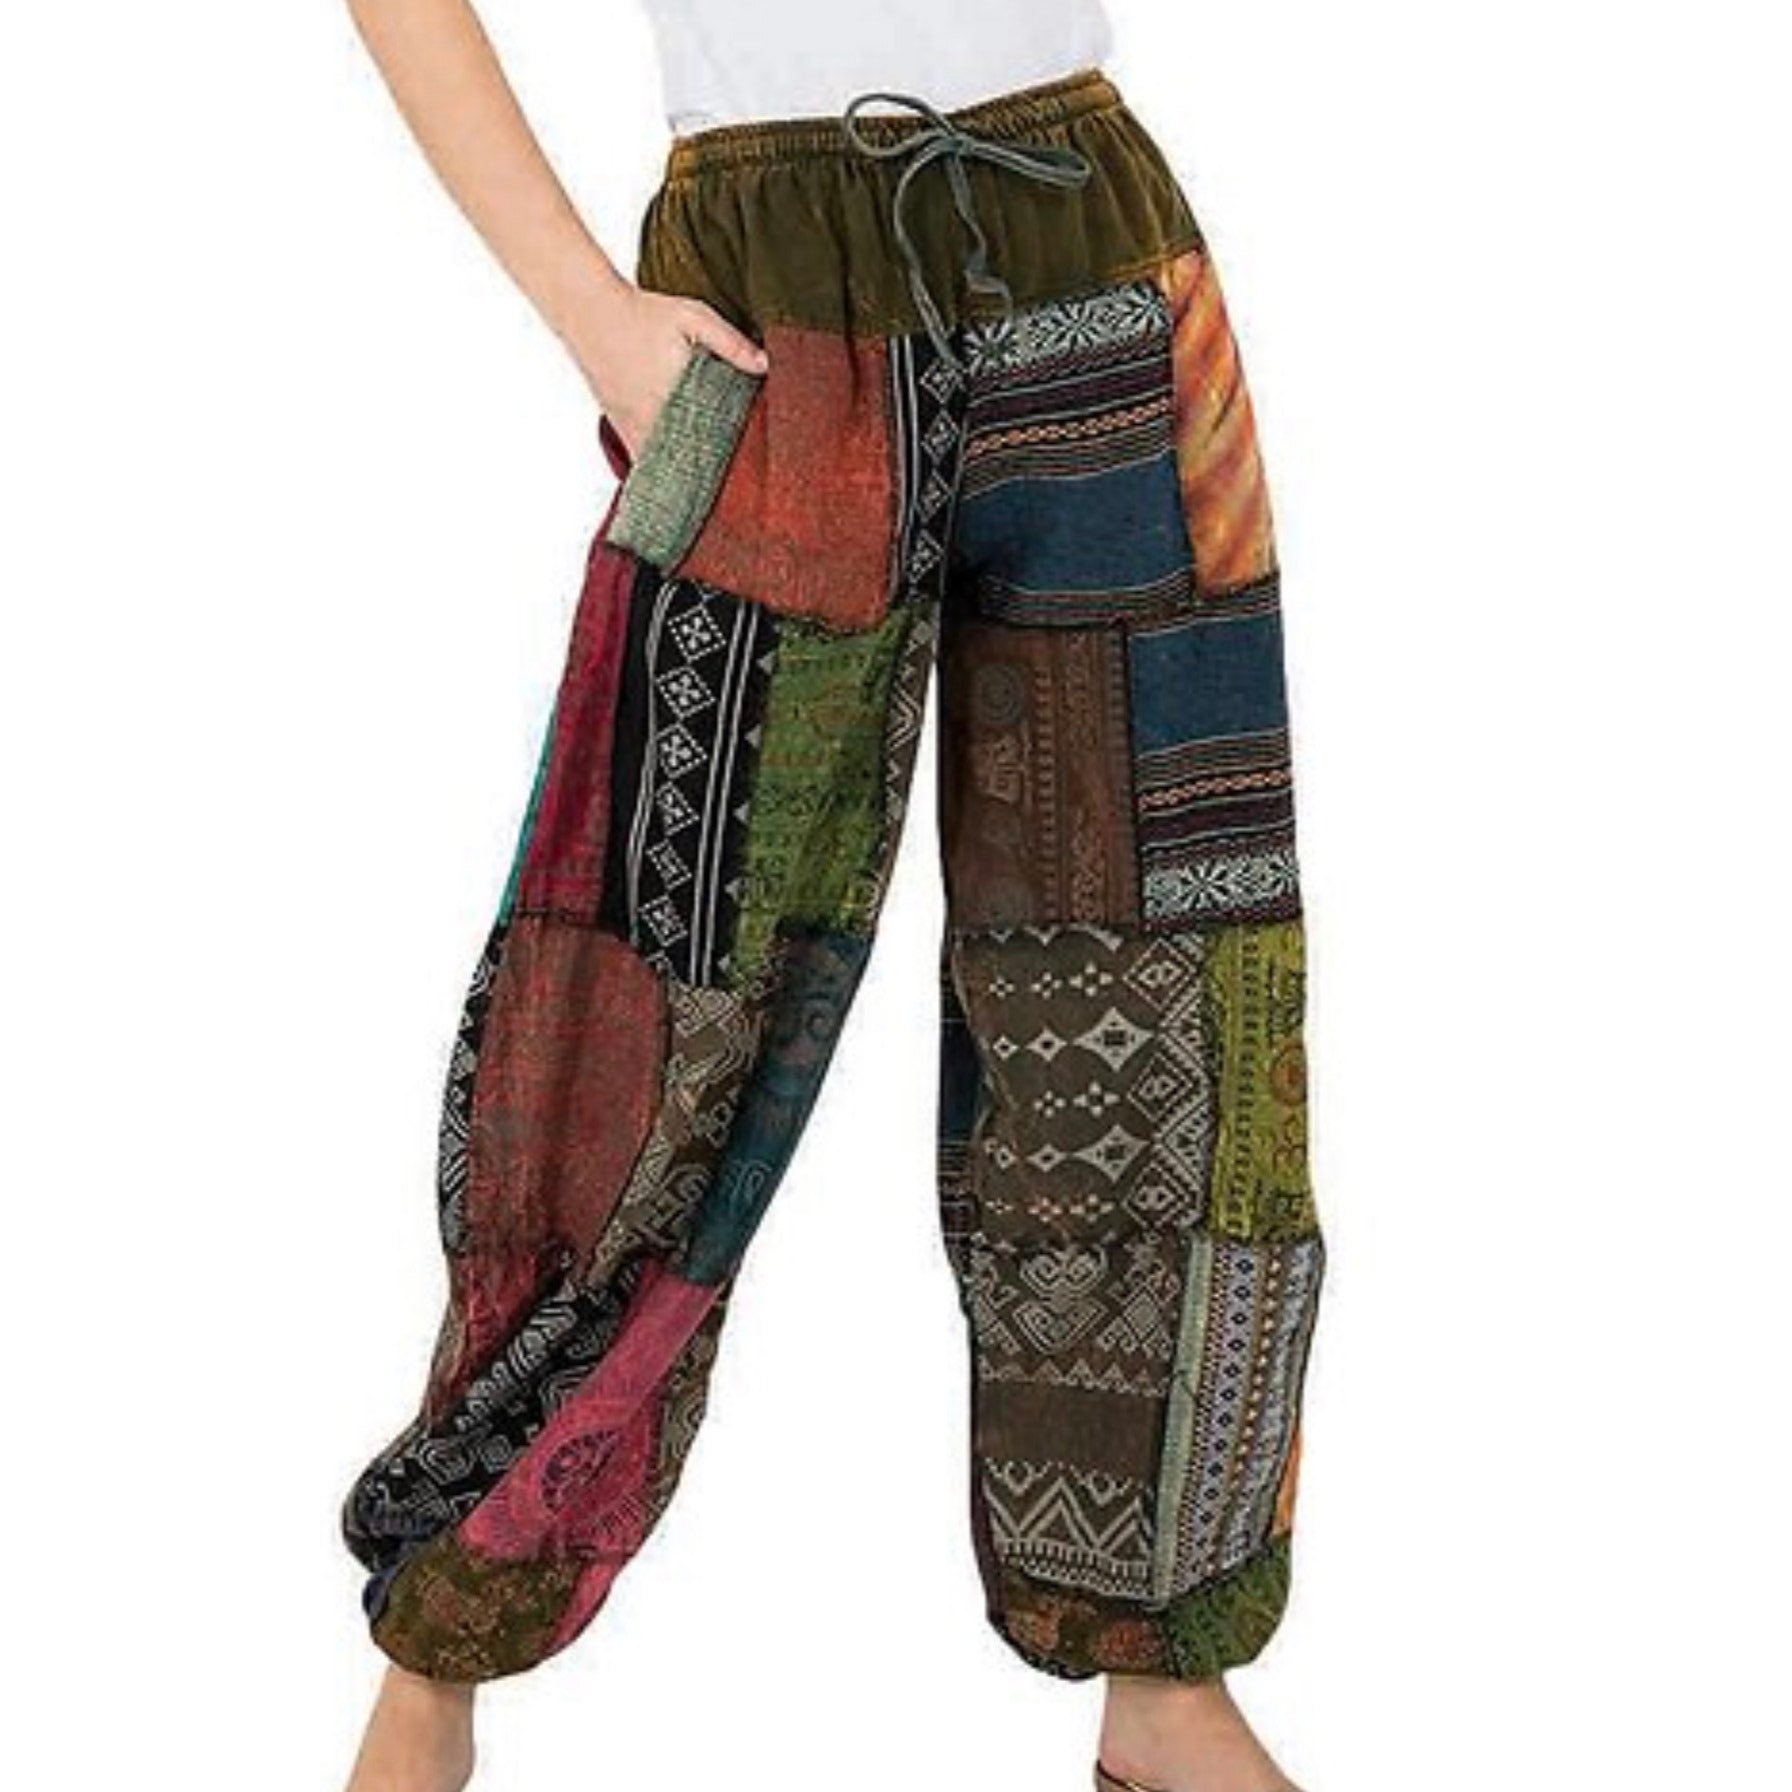 PATCHWORK BOHO PANTS, Patchwork Hippie Pants, Unisex Man Woman